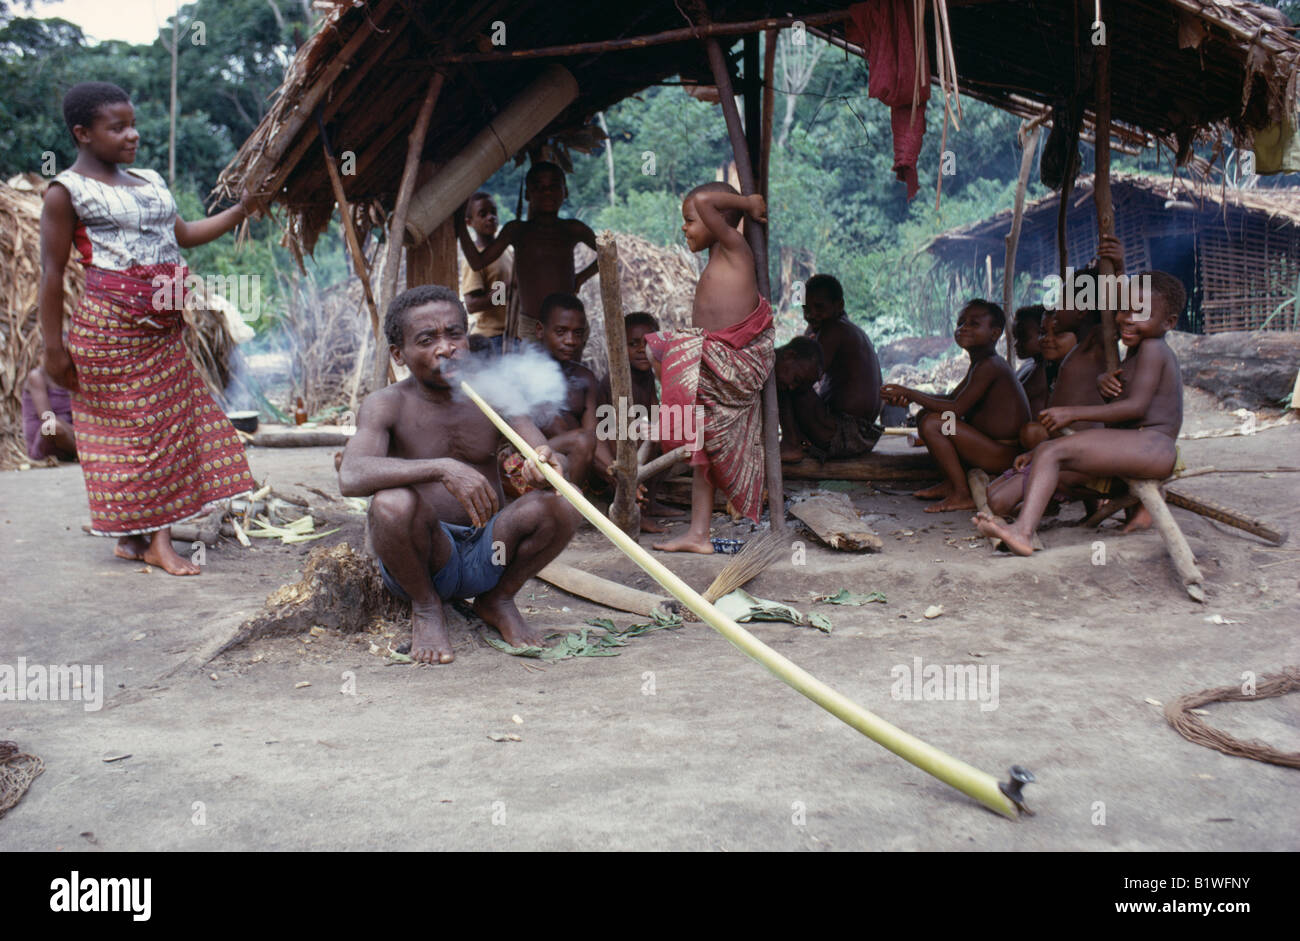 CONGO Afrique Centrale De La Forêt de l'Ituri de groupe pygmée Twa forestiers nomades avec l'homme des personnes fumeurs hallucinogènes à long tuyau Banque D'Images